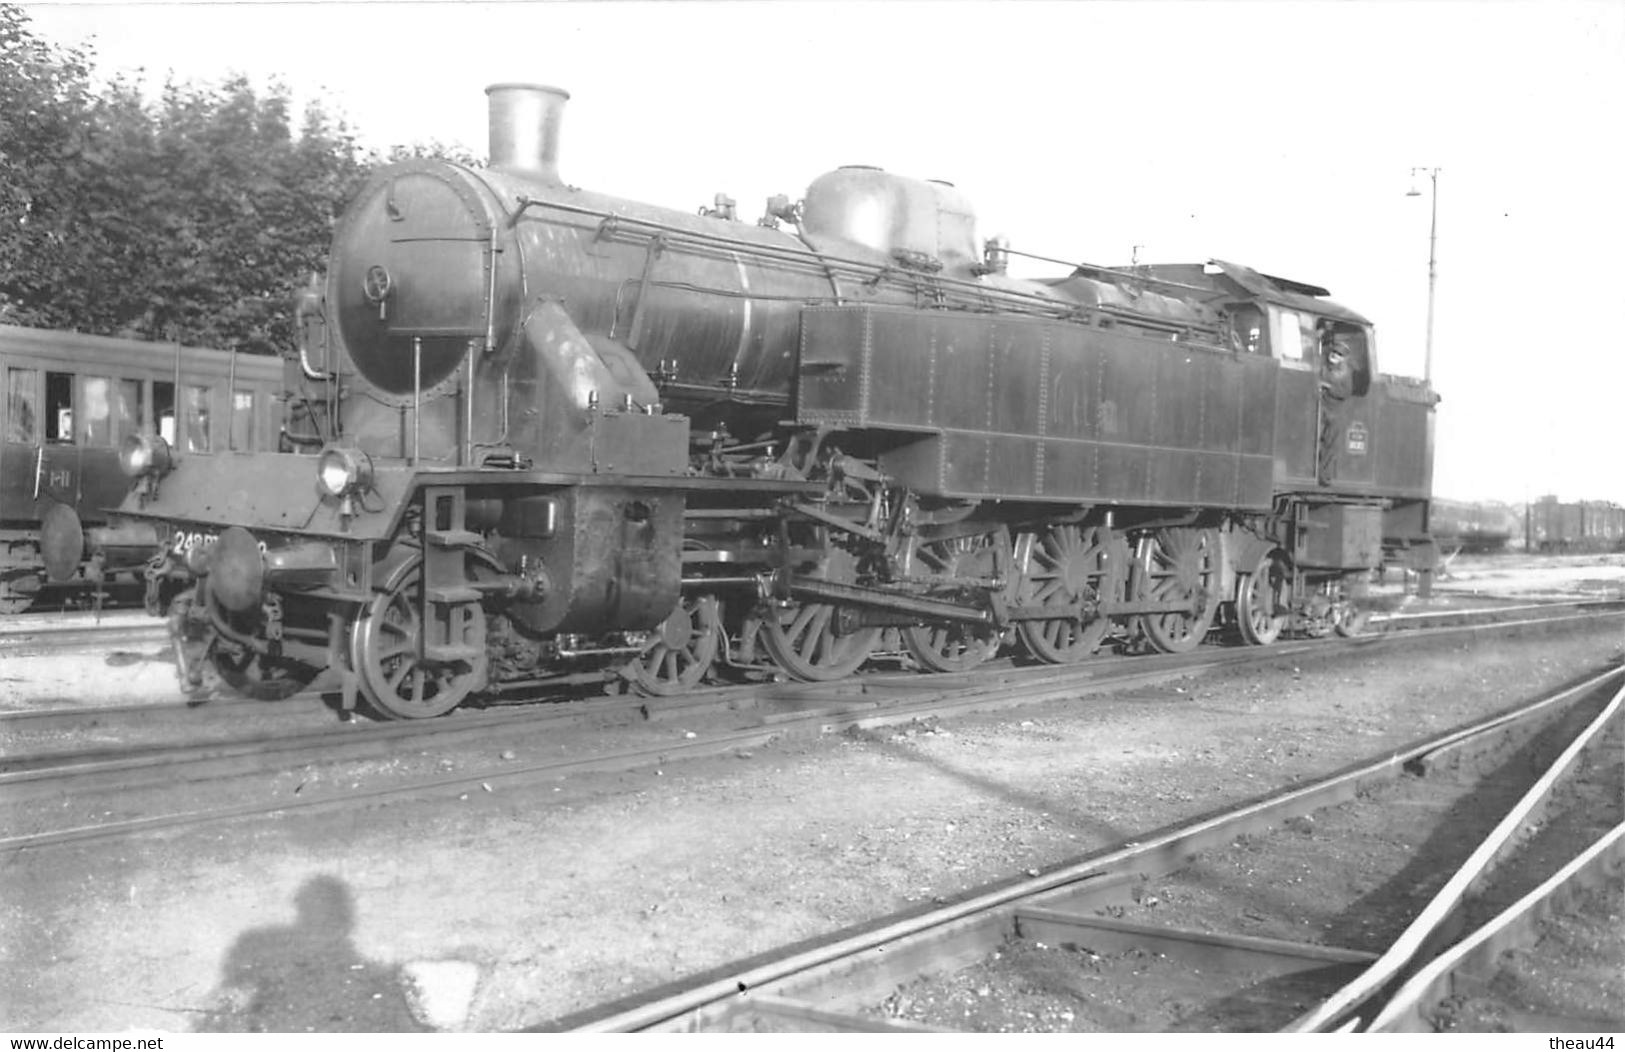 ¤¤  -  Cliché D'une Locomotive Du P.L.M.   -  Cheminots   -  Train  -   Chemin De Fer  -  ¤¤ - Matériel